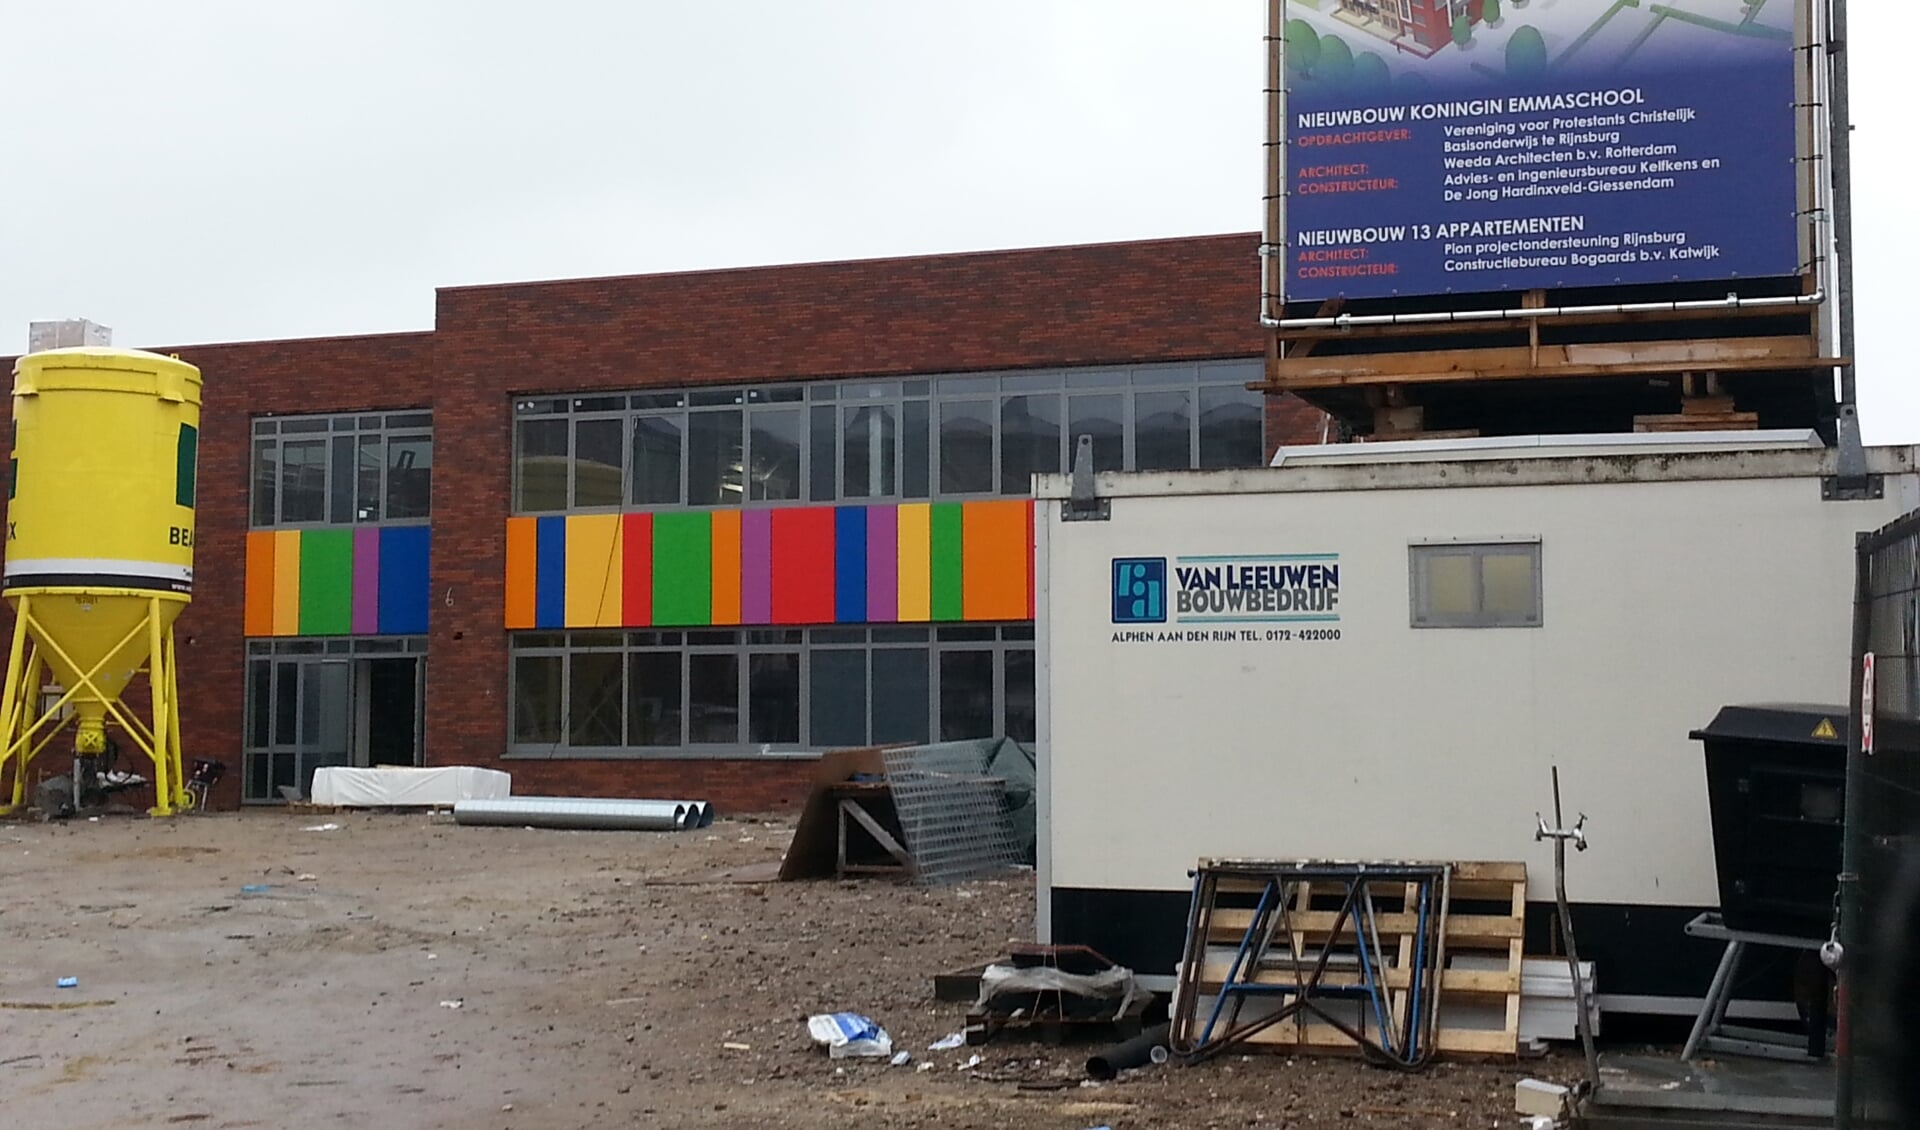 Nieuwbouw Emmaschool in Rijnsburg, waar zowel een school als woningen worden gebouwd.